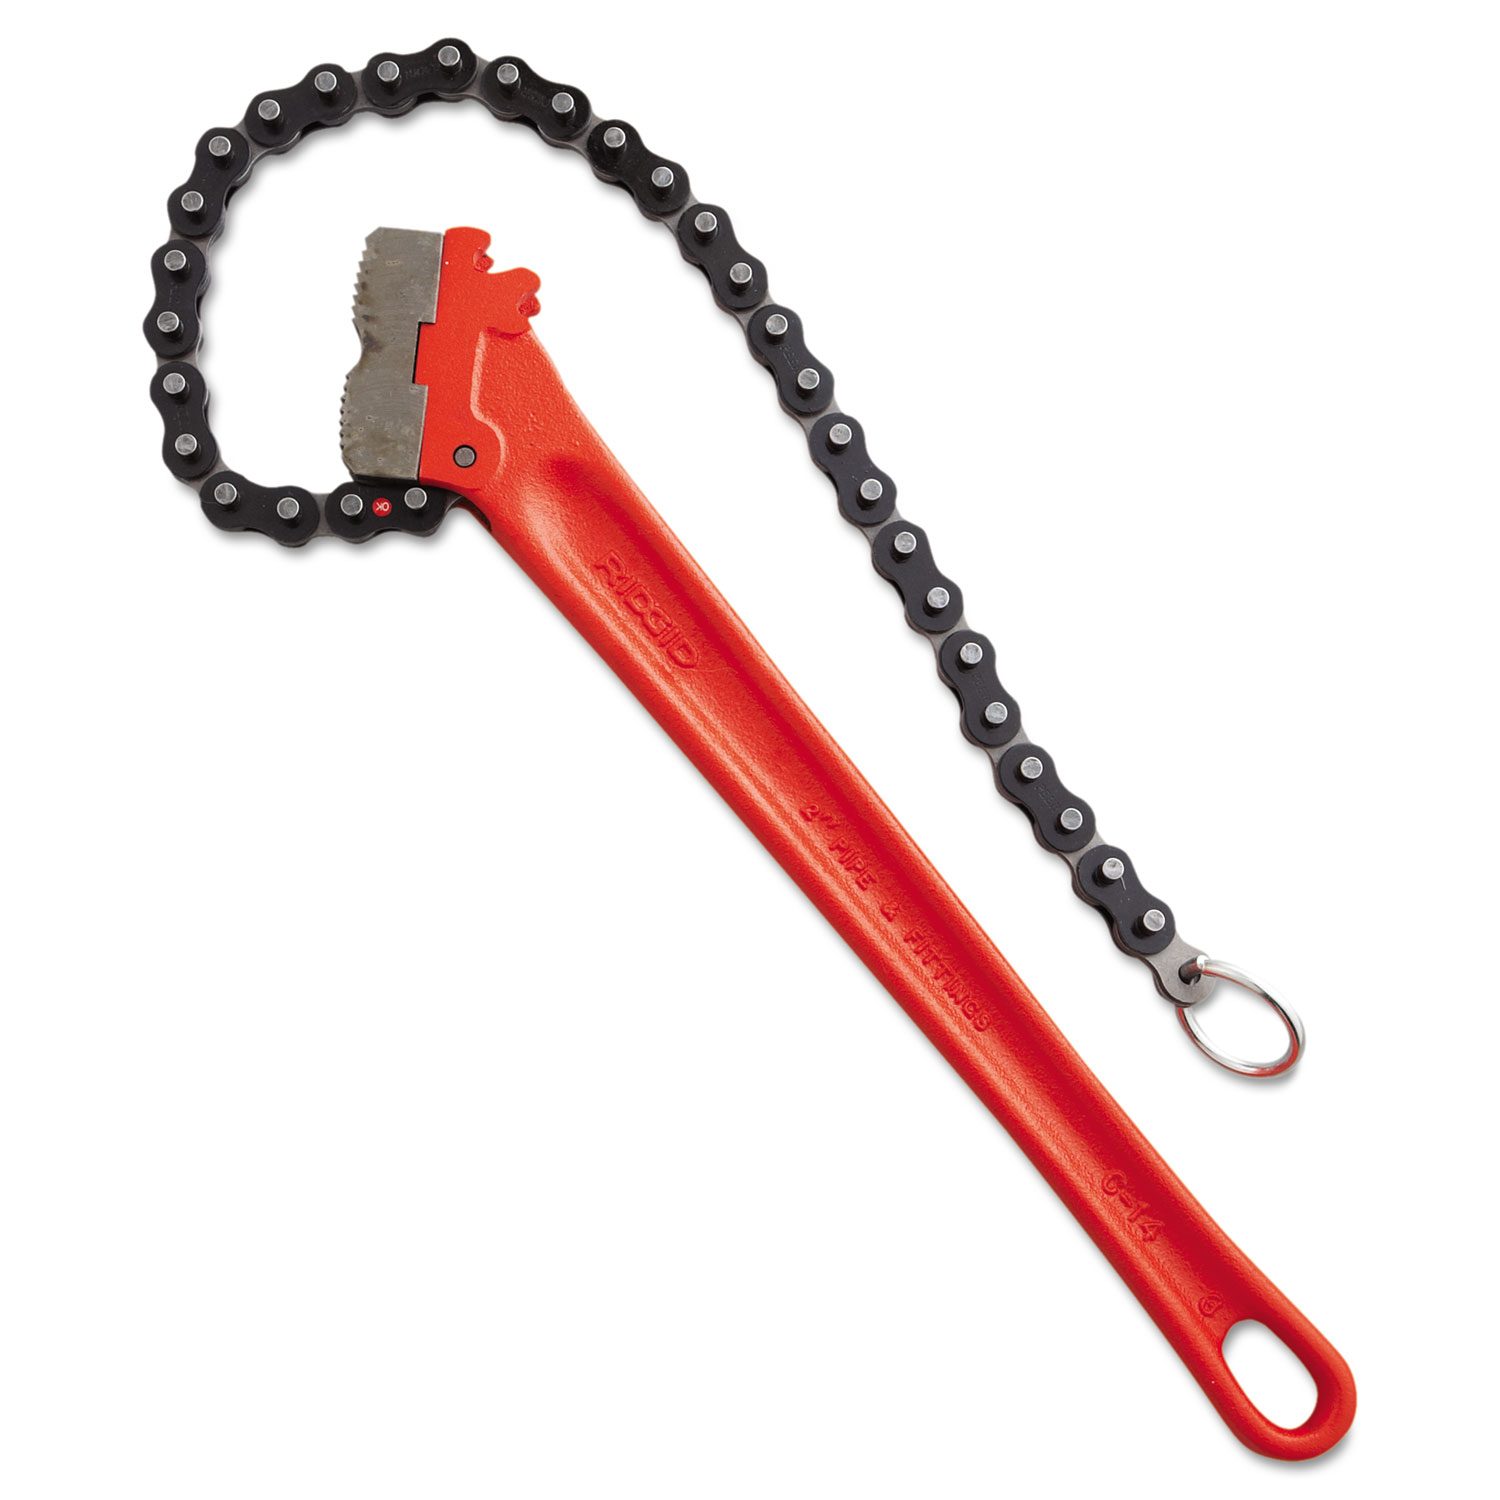 RIDGID Chain Wrench, 18 1/2 Chain, 2-5 Capacity